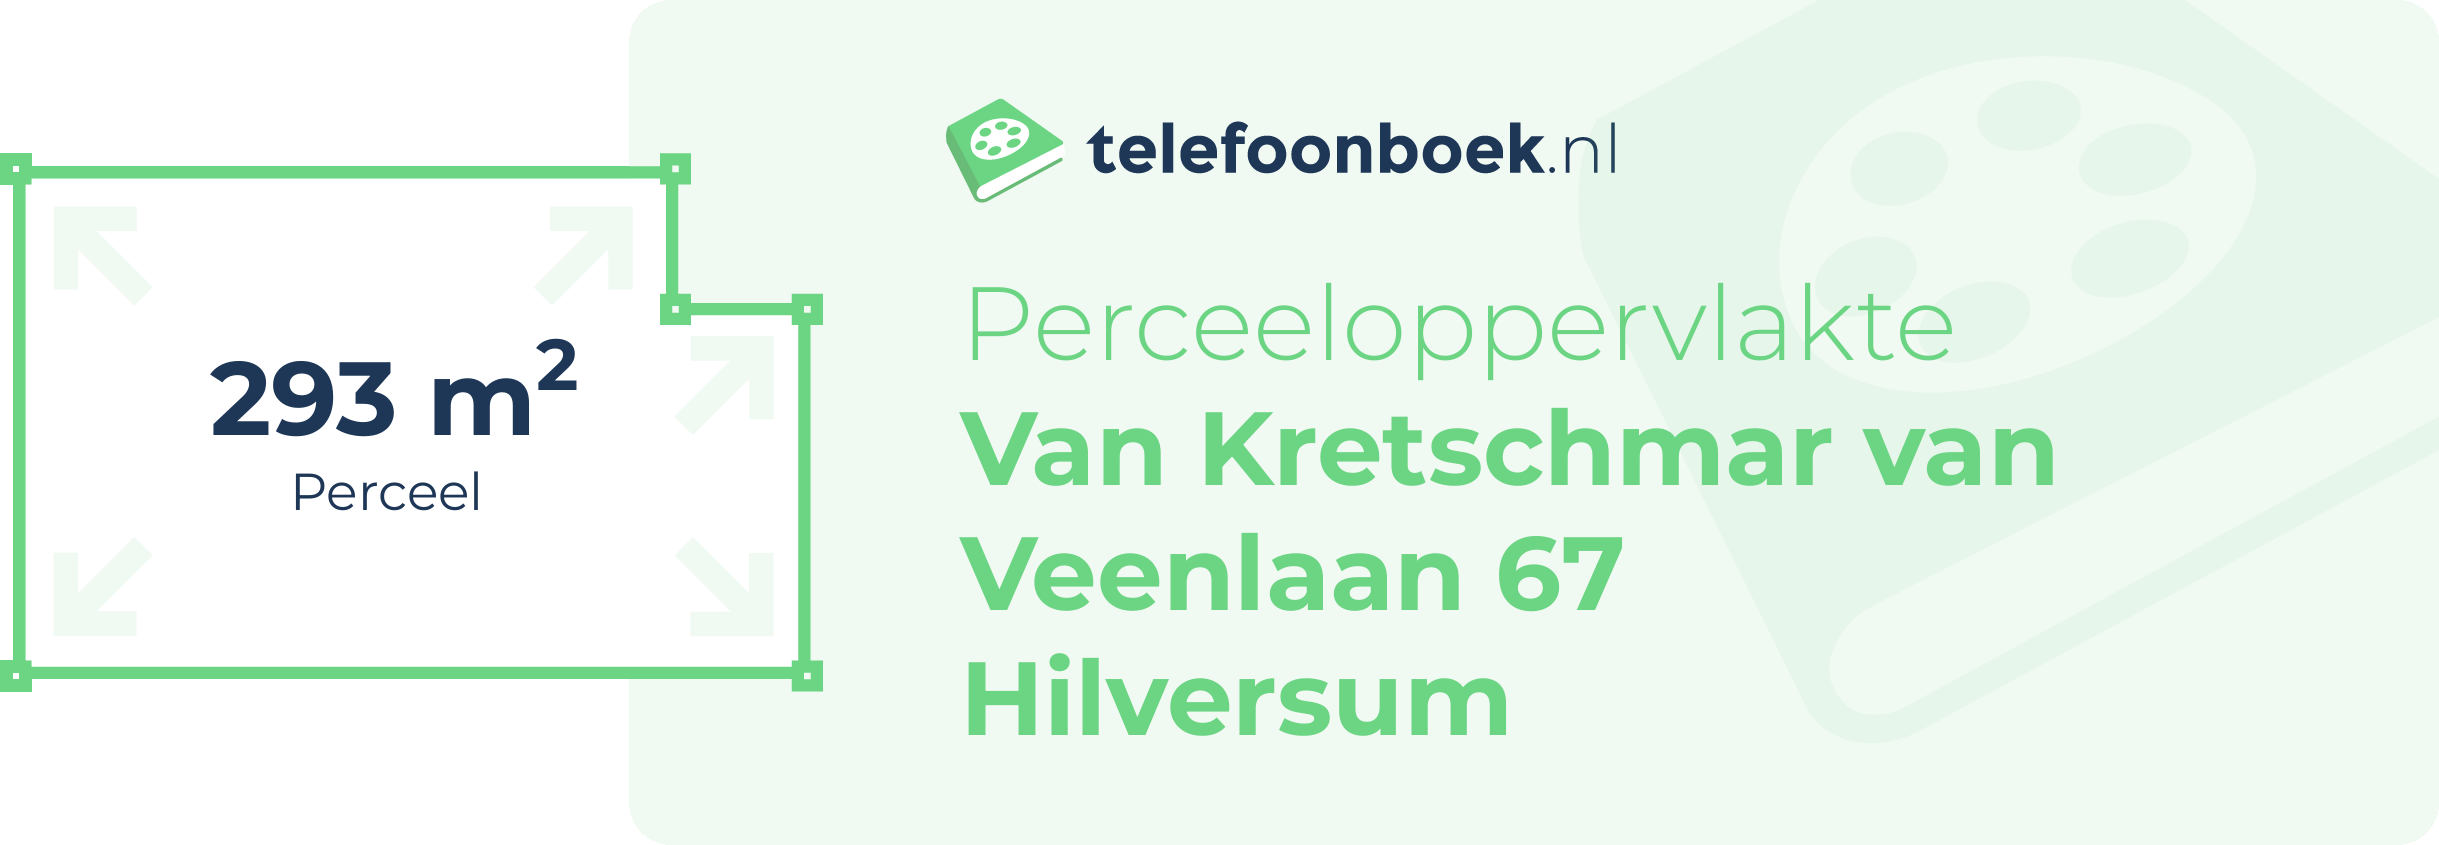 Perceeloppervlakte Van Kretschmar Van Veenlaan 67 Hilversum